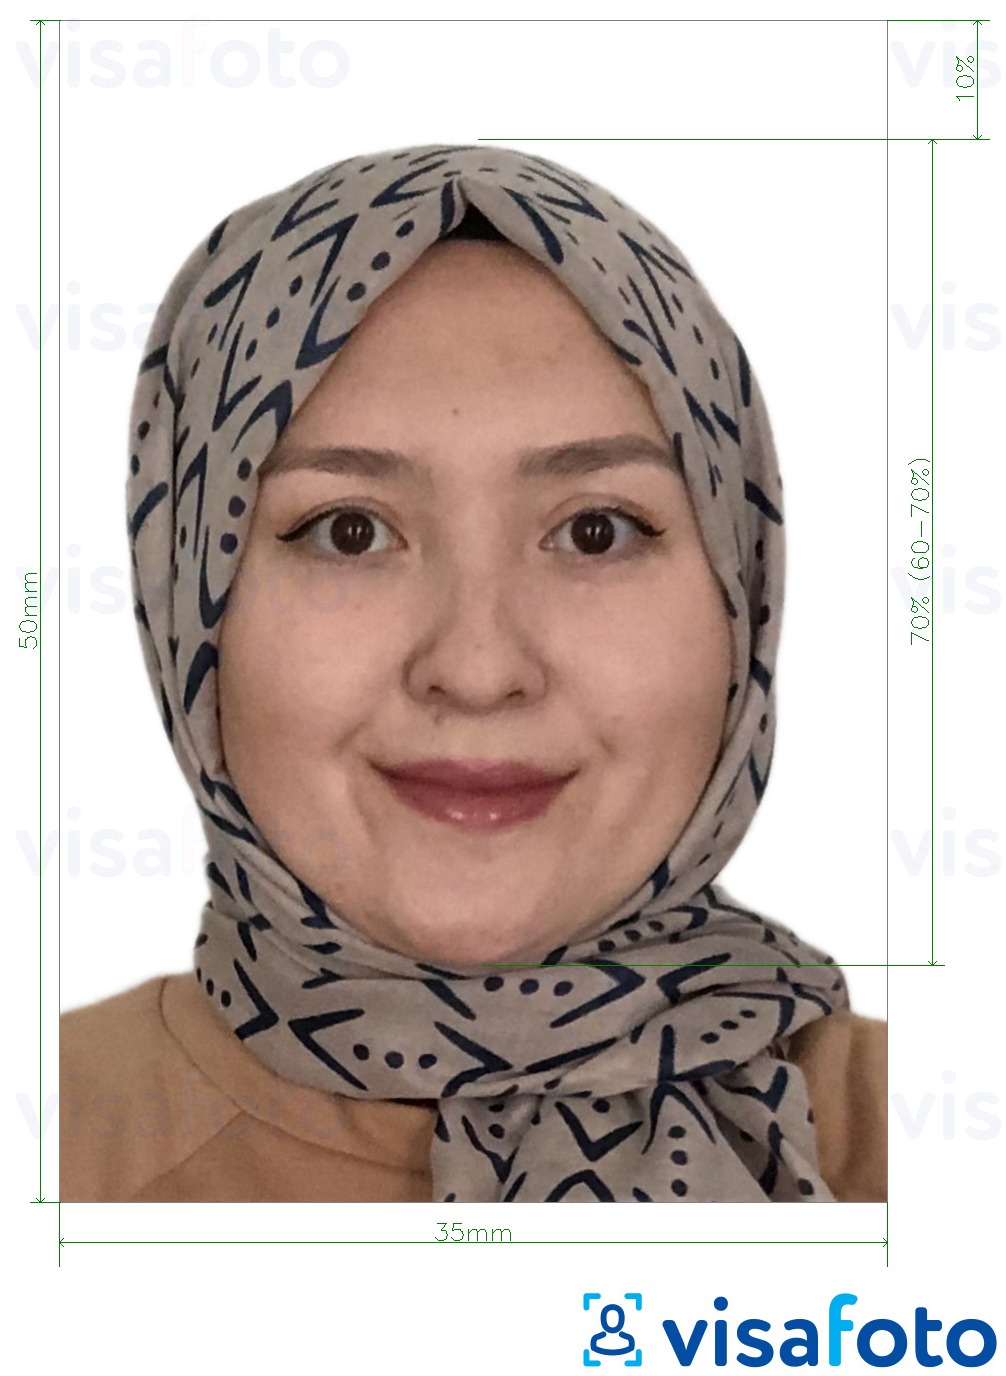 Fotobeispiel für Malaysia Visa 35x50 mm weißer Hintergrund mit genauer größenangabe